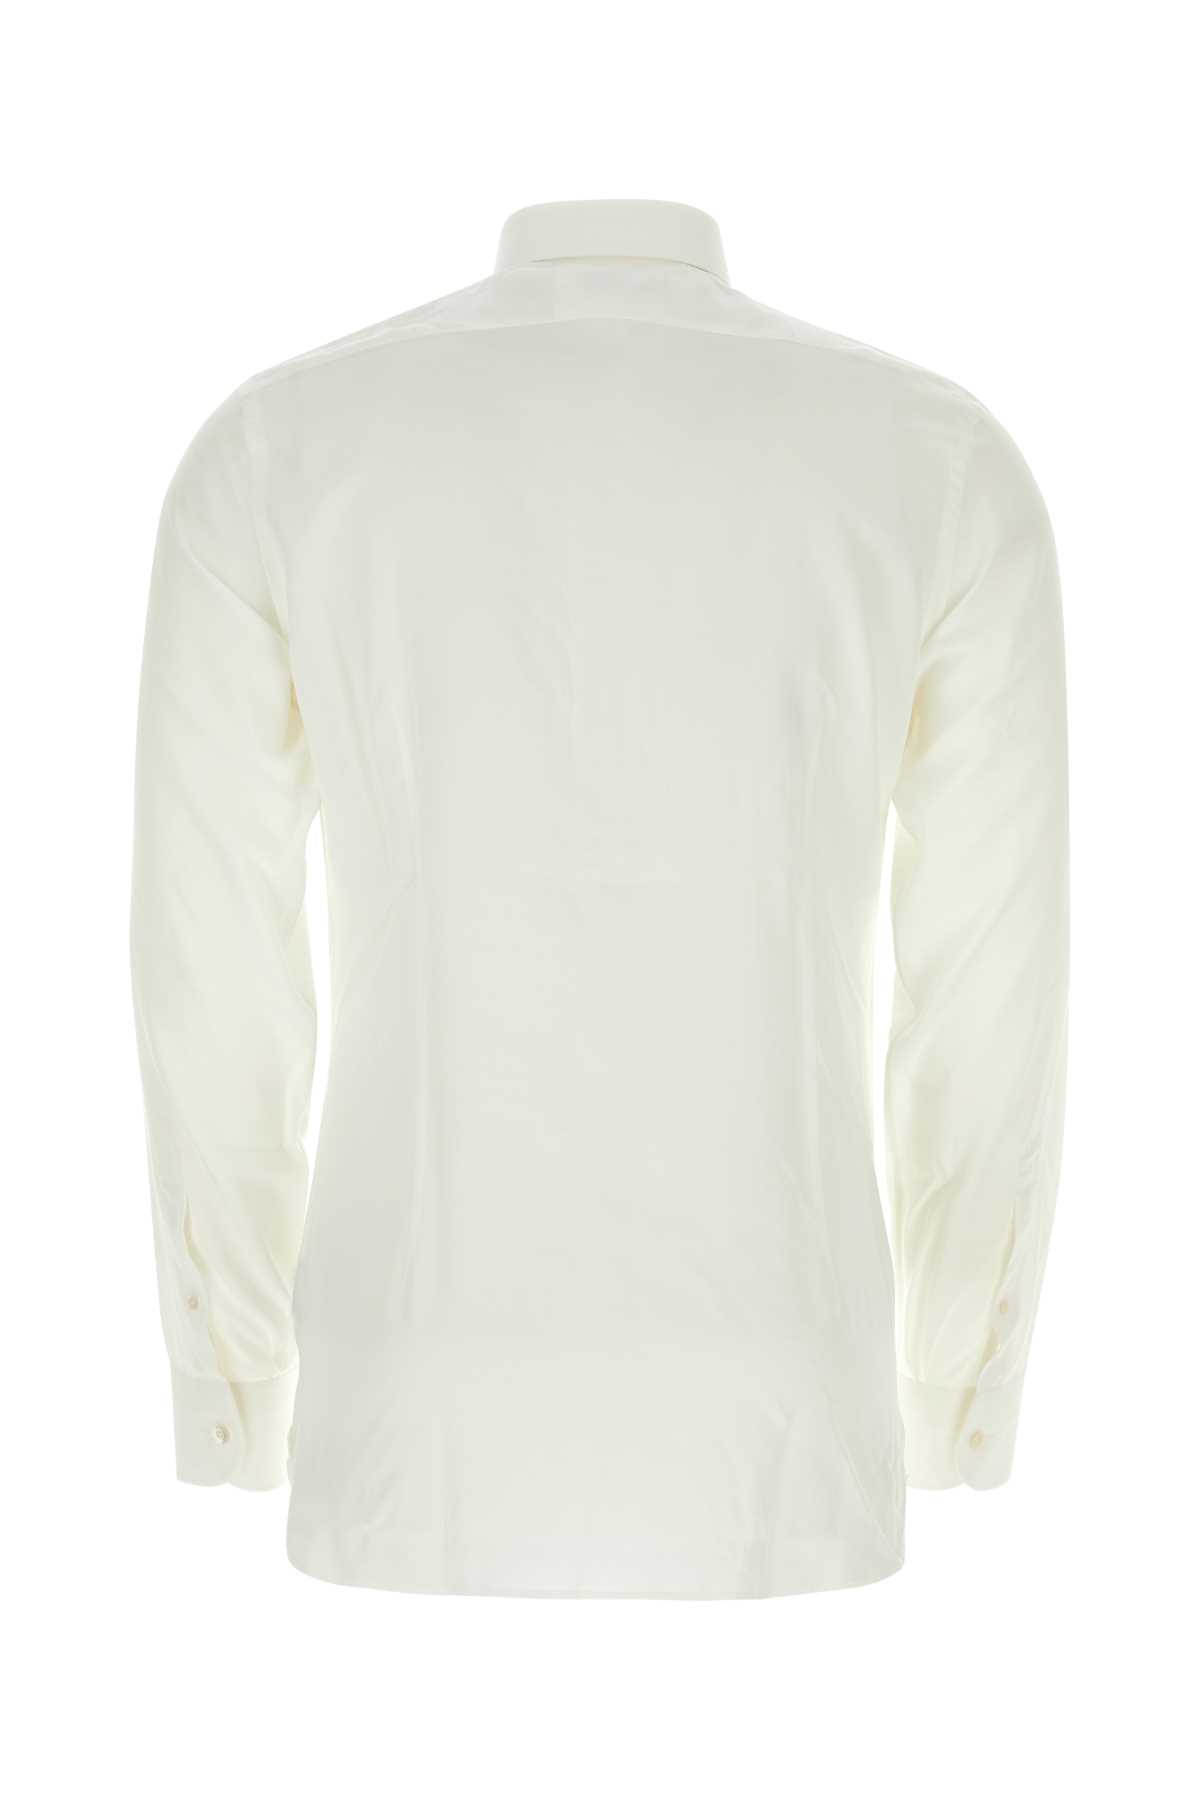 Tom Ford White Lyocell Blend Shirt In Ivory